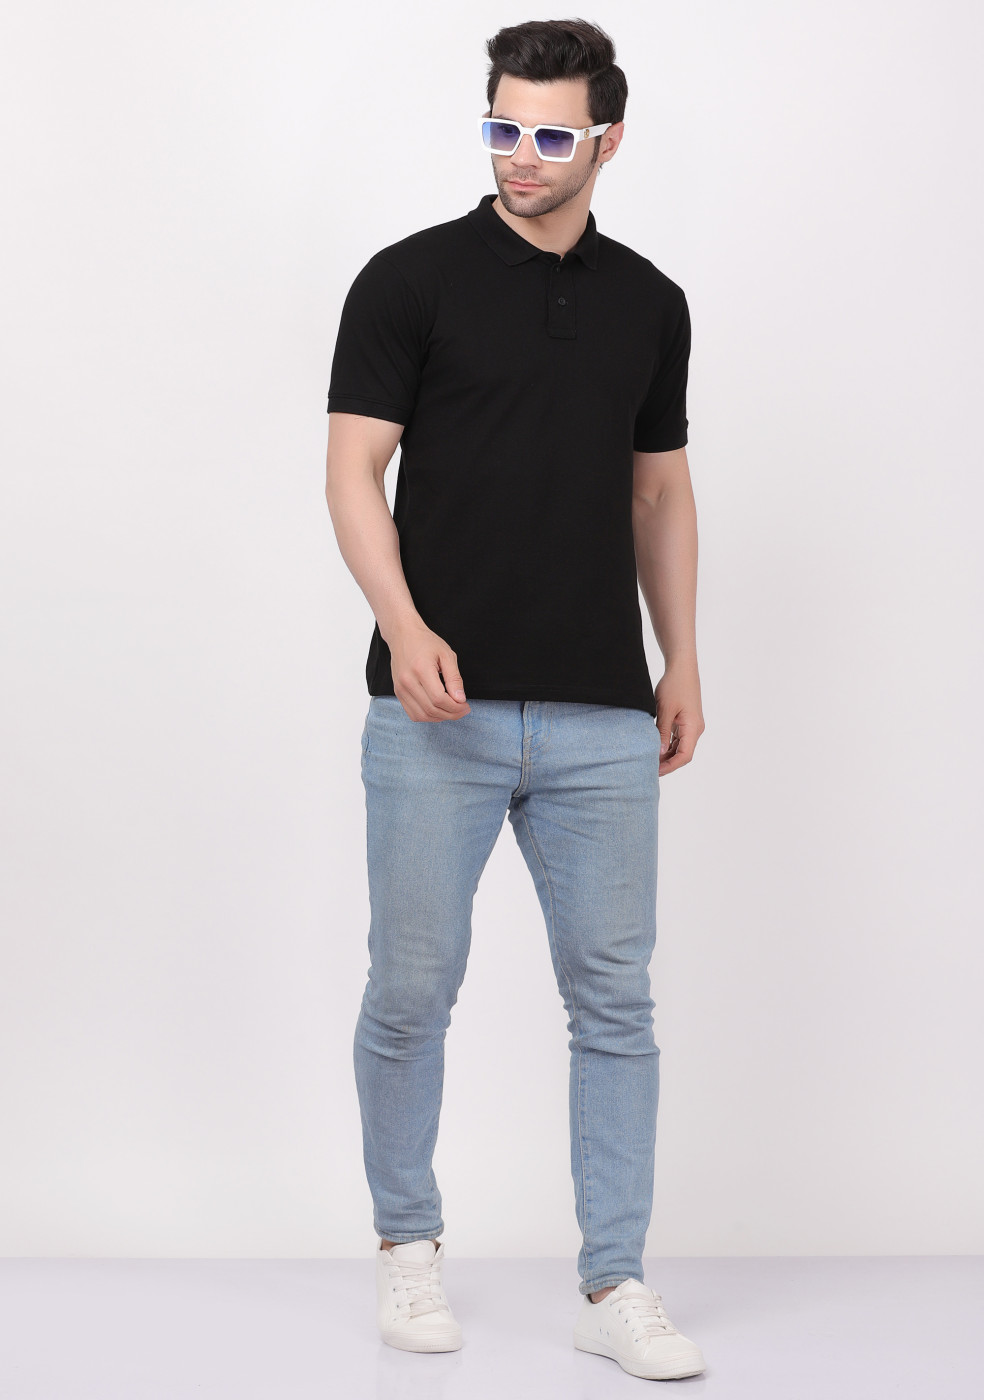 Collar Casual Wear Stylish Matty Polo T- Shirt For Men